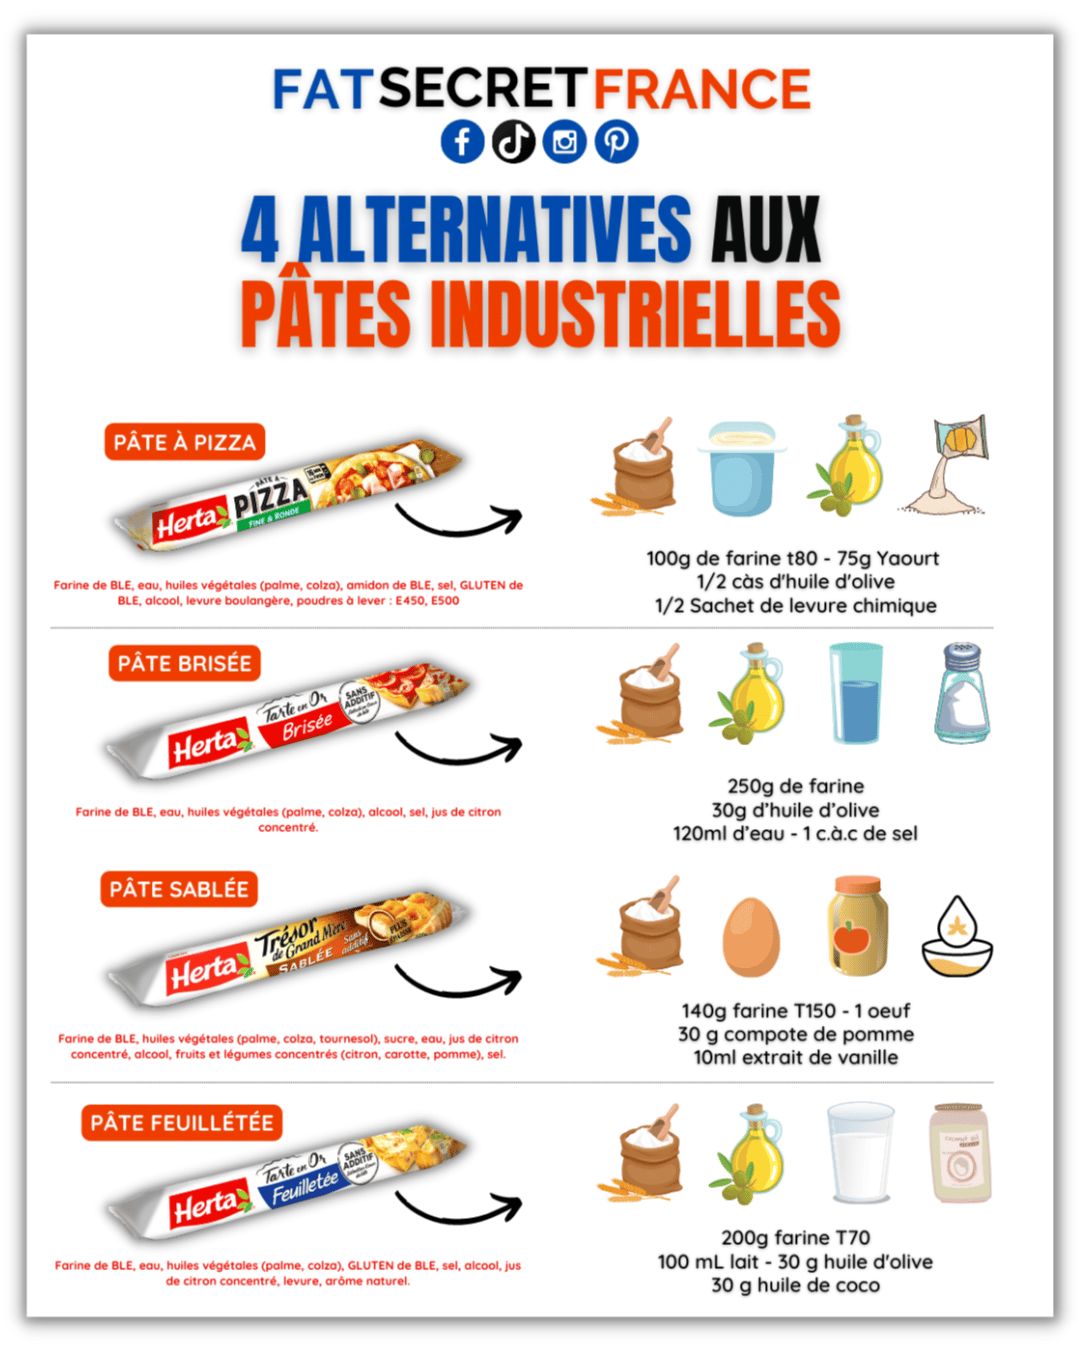 Alternatives "healthy" aux pâtes industrielles